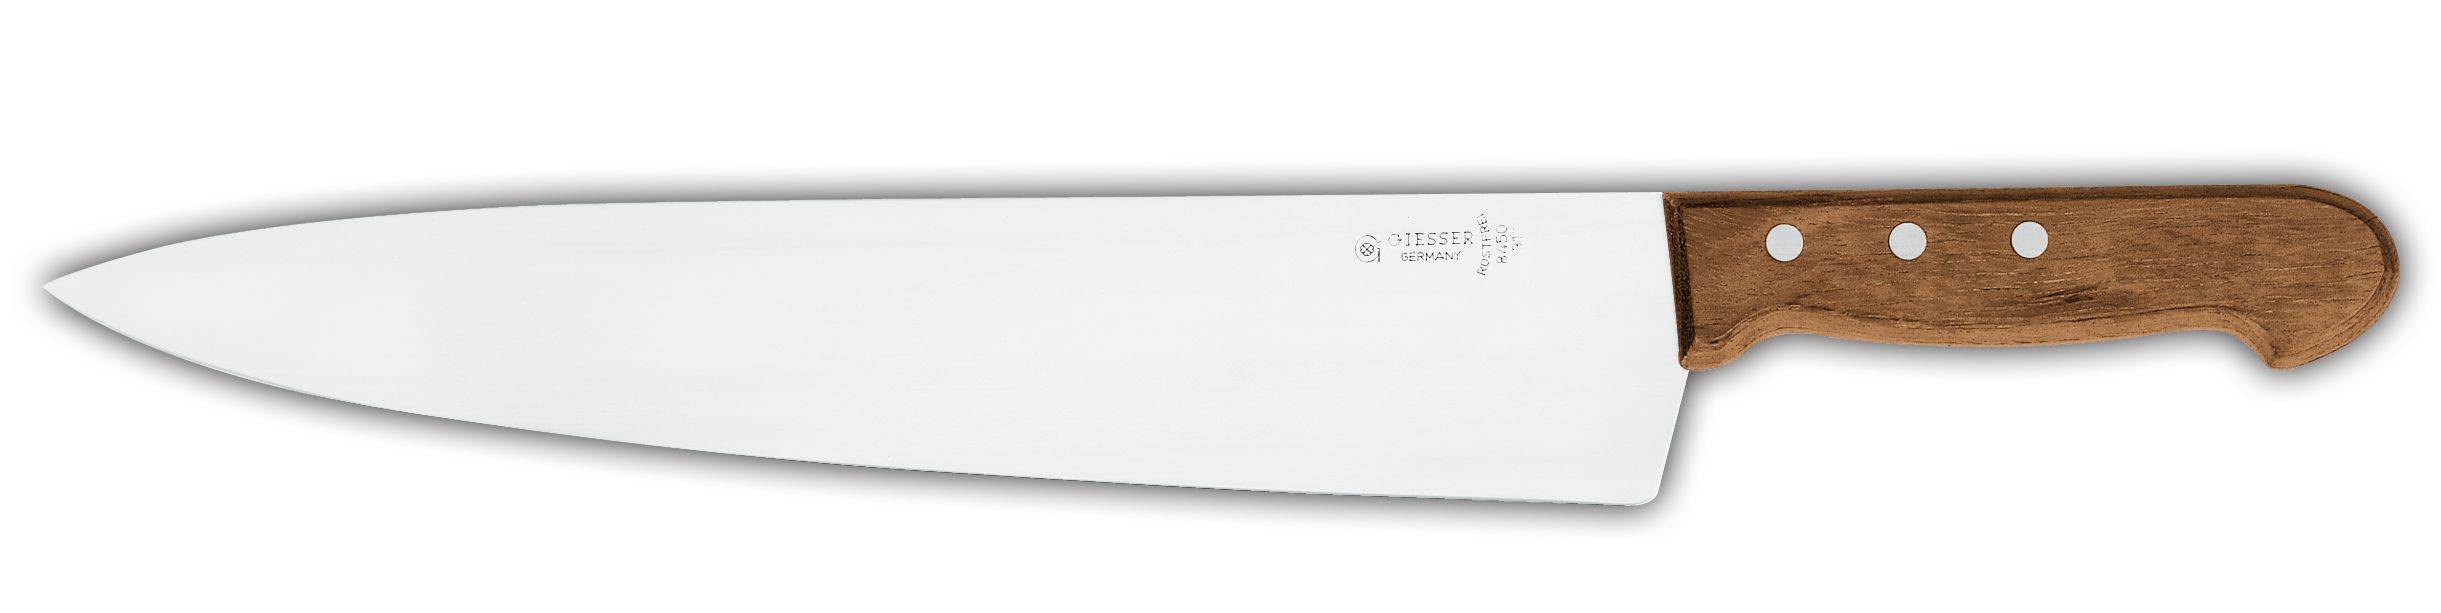 Нож поварской 8450  с деревянной ручкой, 26 см,  черная рукоятка